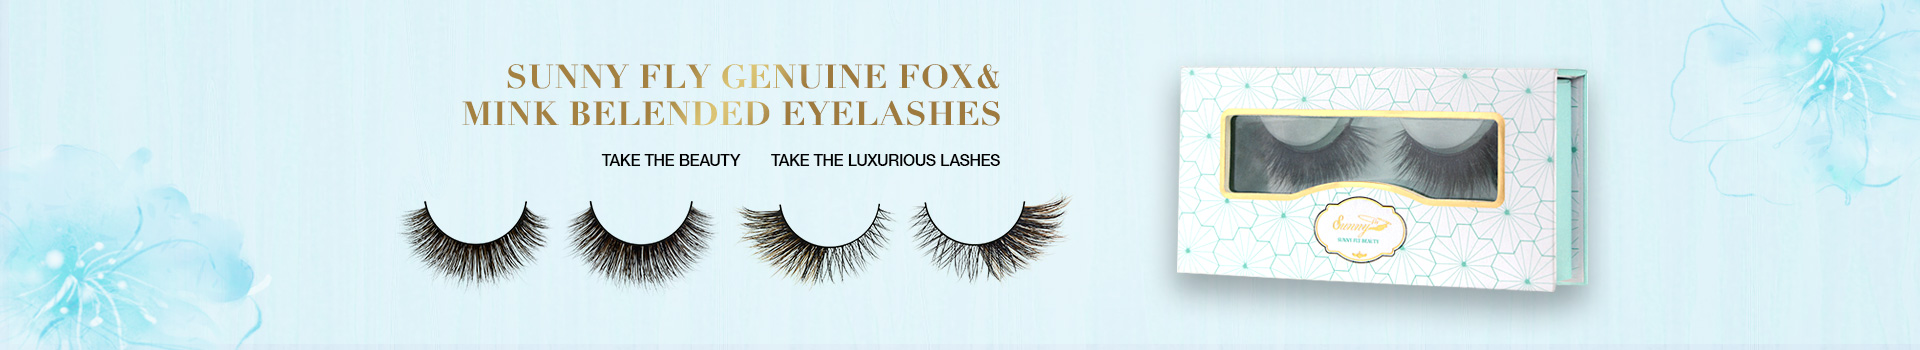 Fox & Mink Fur Blended Eyelashes FMB02